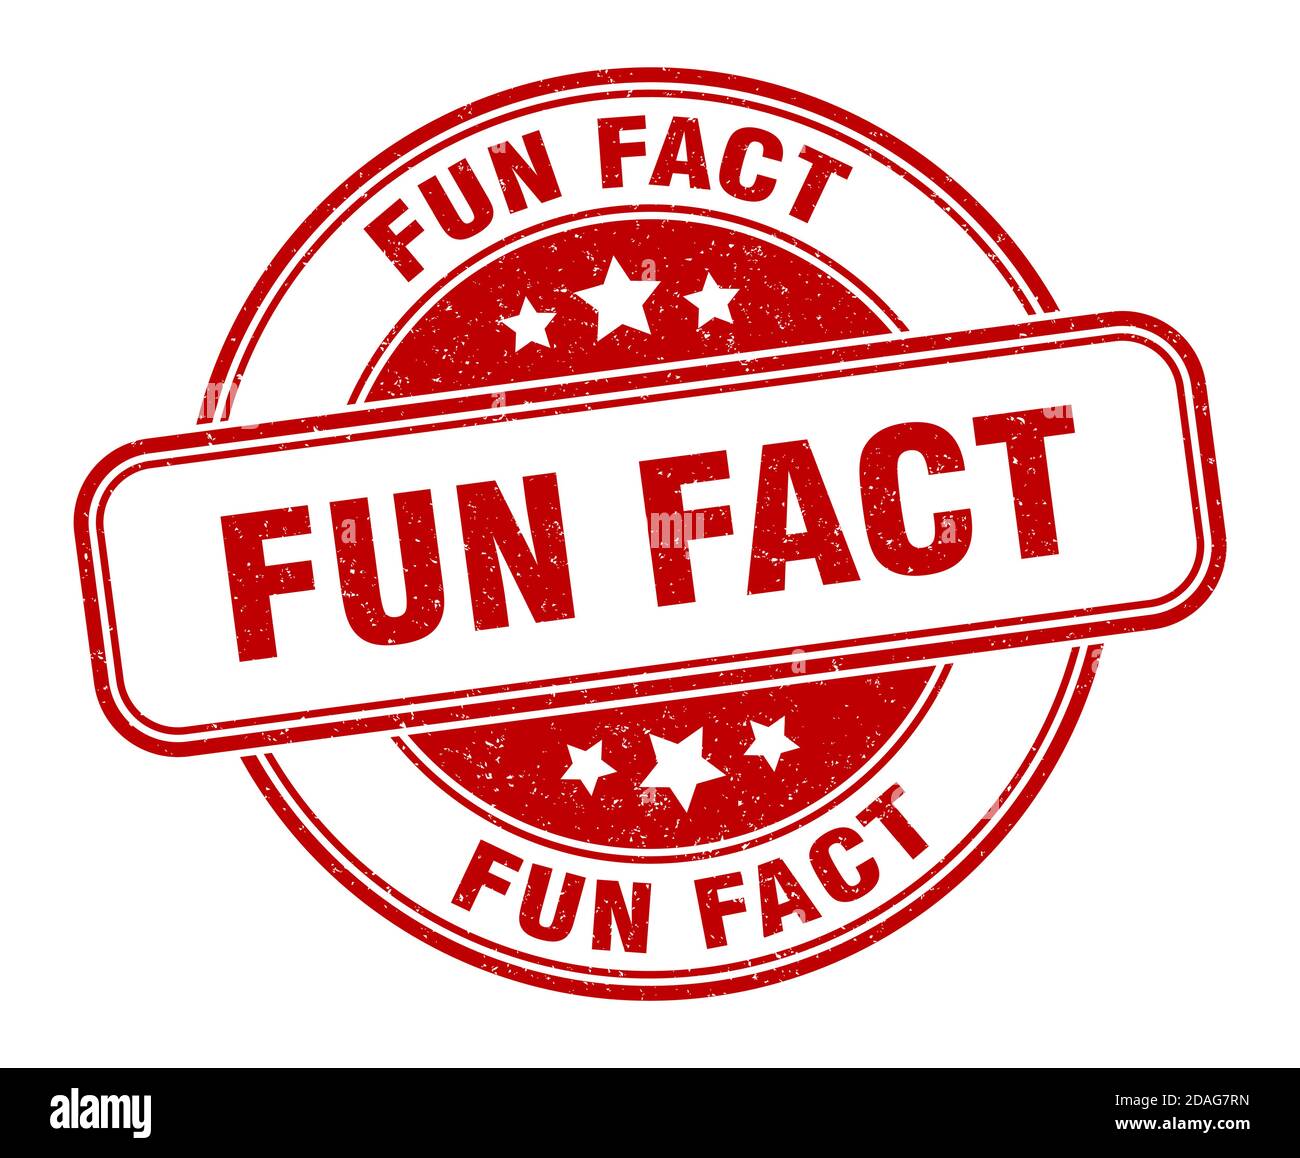 fun fact stamp. fun fact sign. round grunge label Stock Vector Image ...